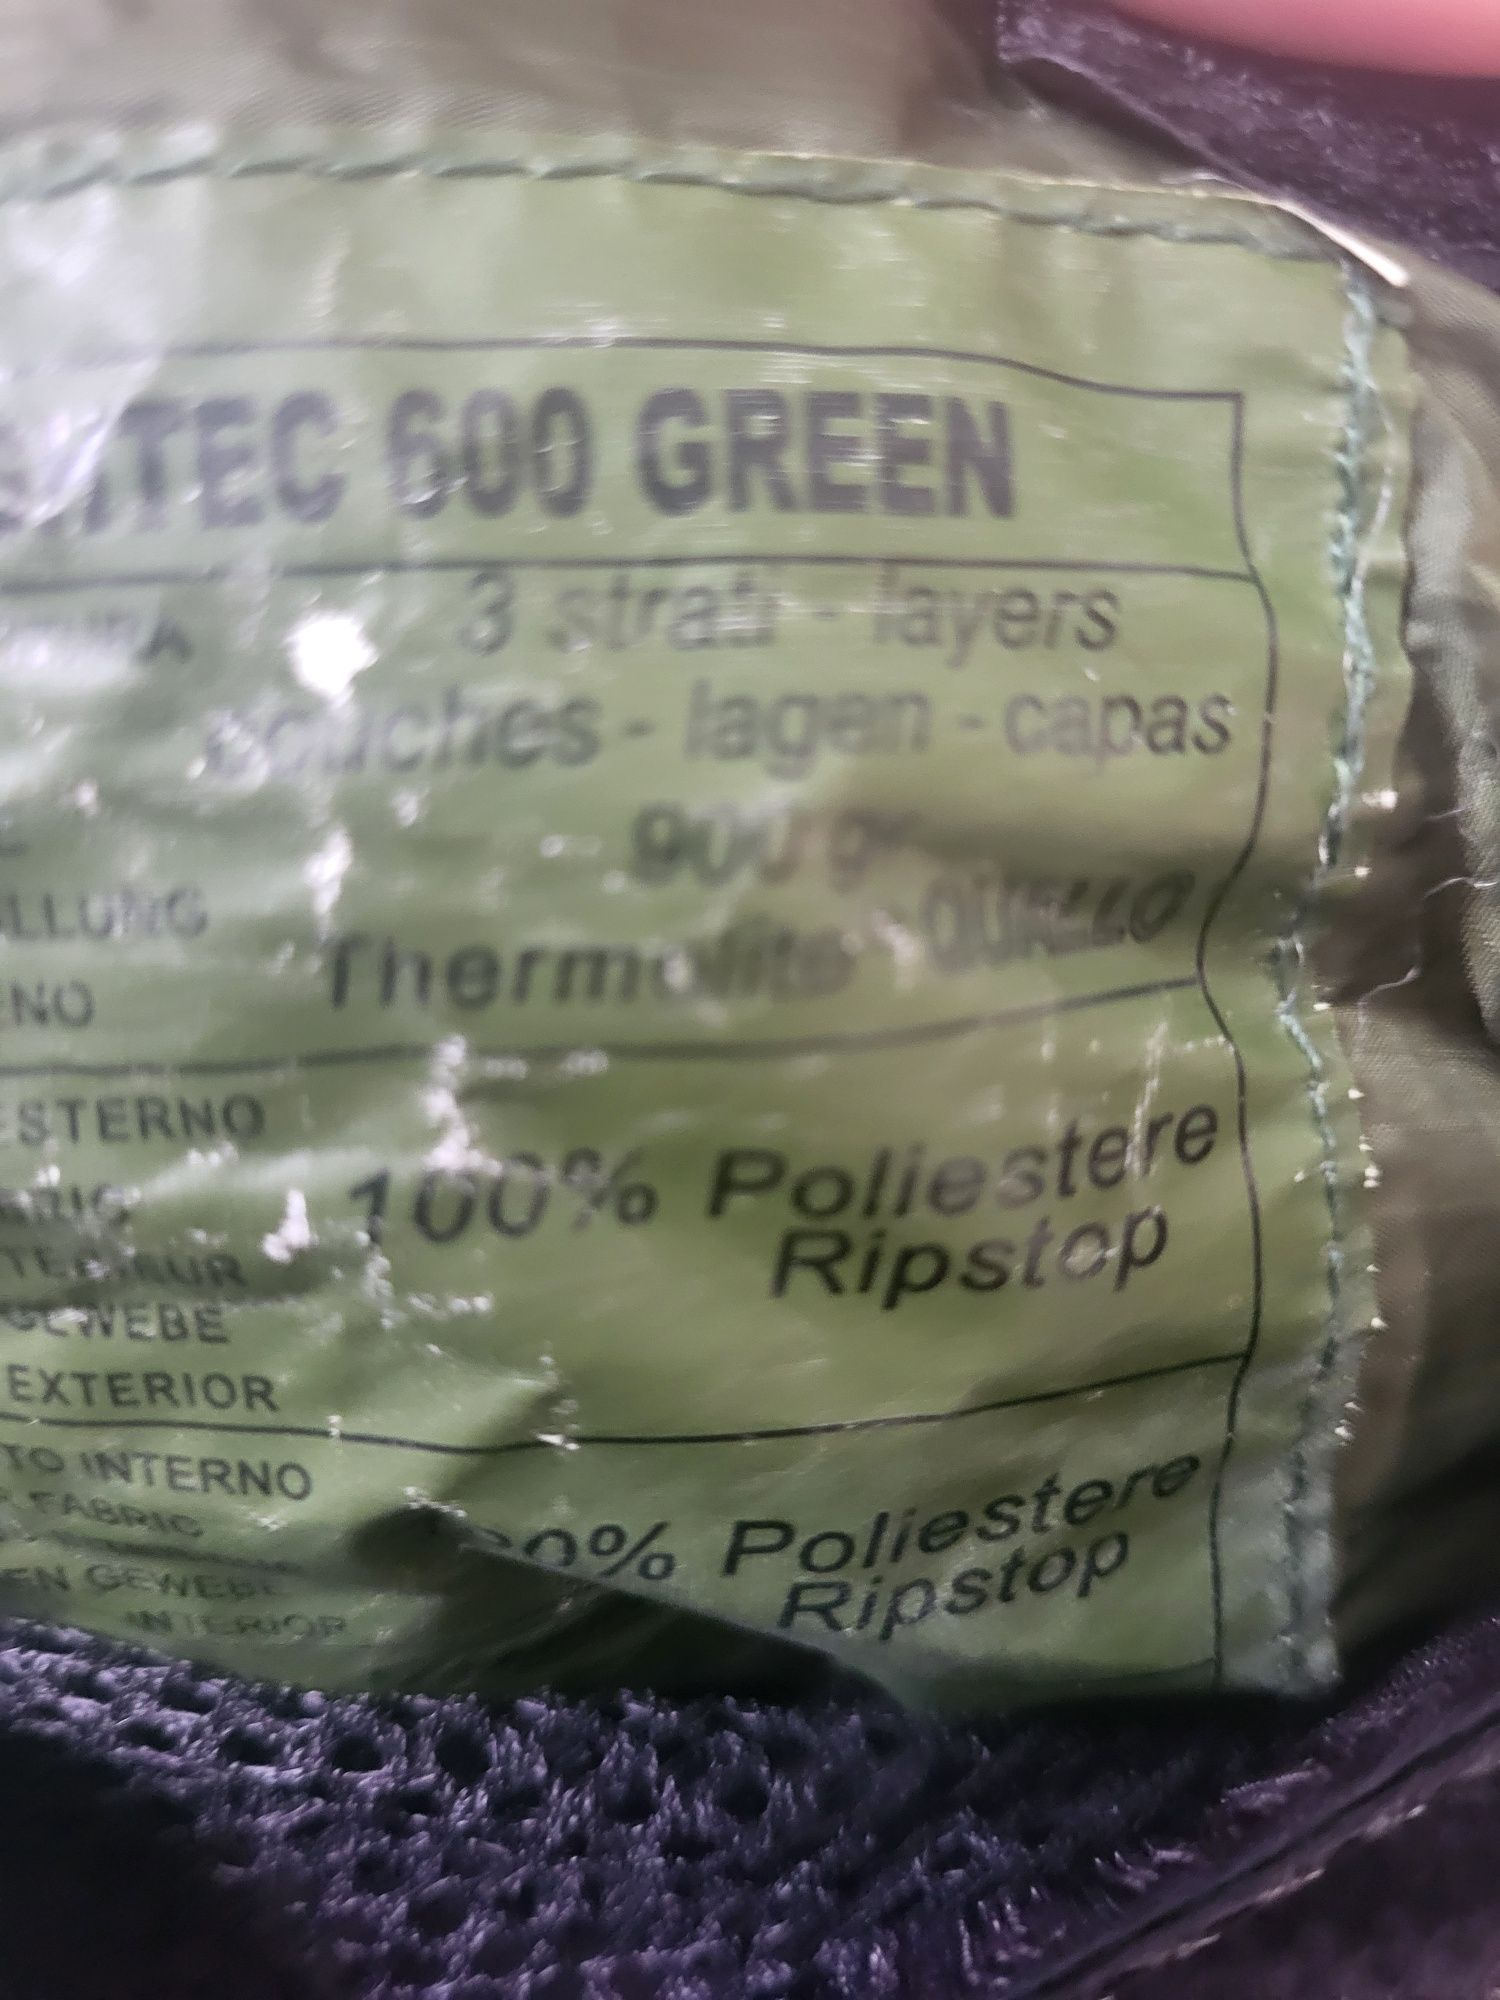 Śpiwór nightek 600 green